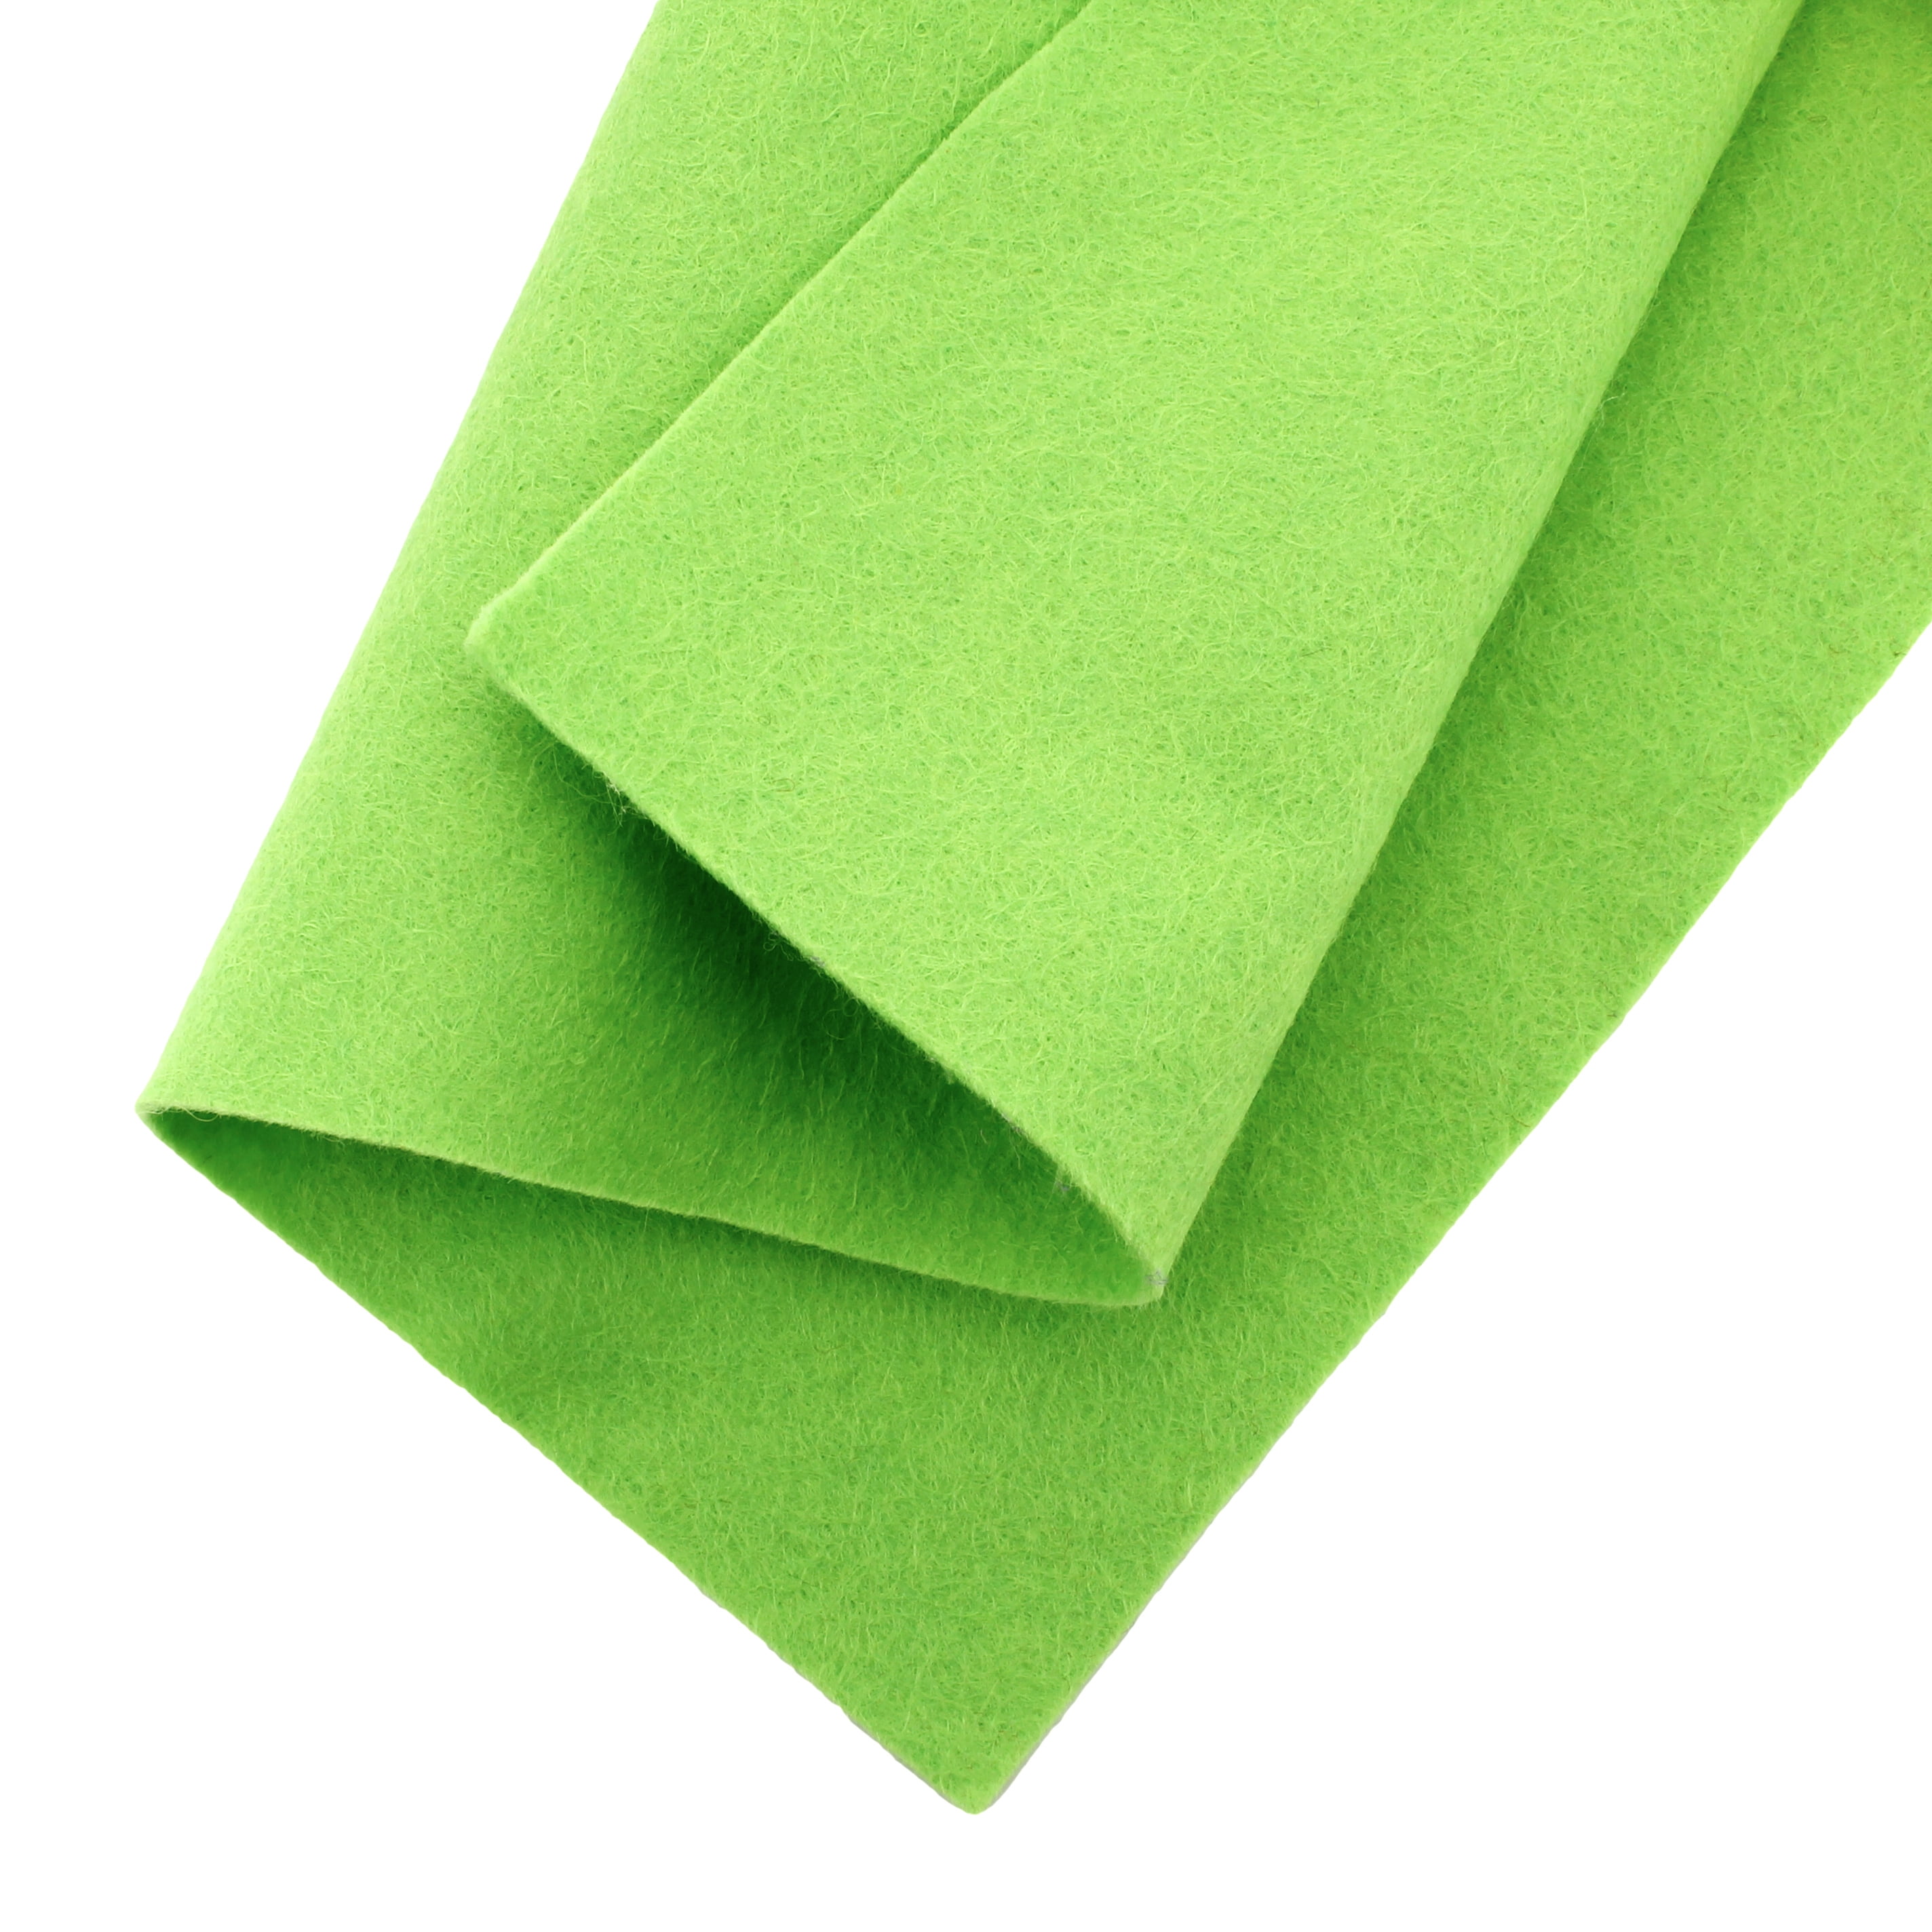 Green Felt Collection - 12 Sheets of Green Wool Blend Felt - Felt Bundle -  30% Wool Blend Felt - Choose the size - Soft Craft Felt